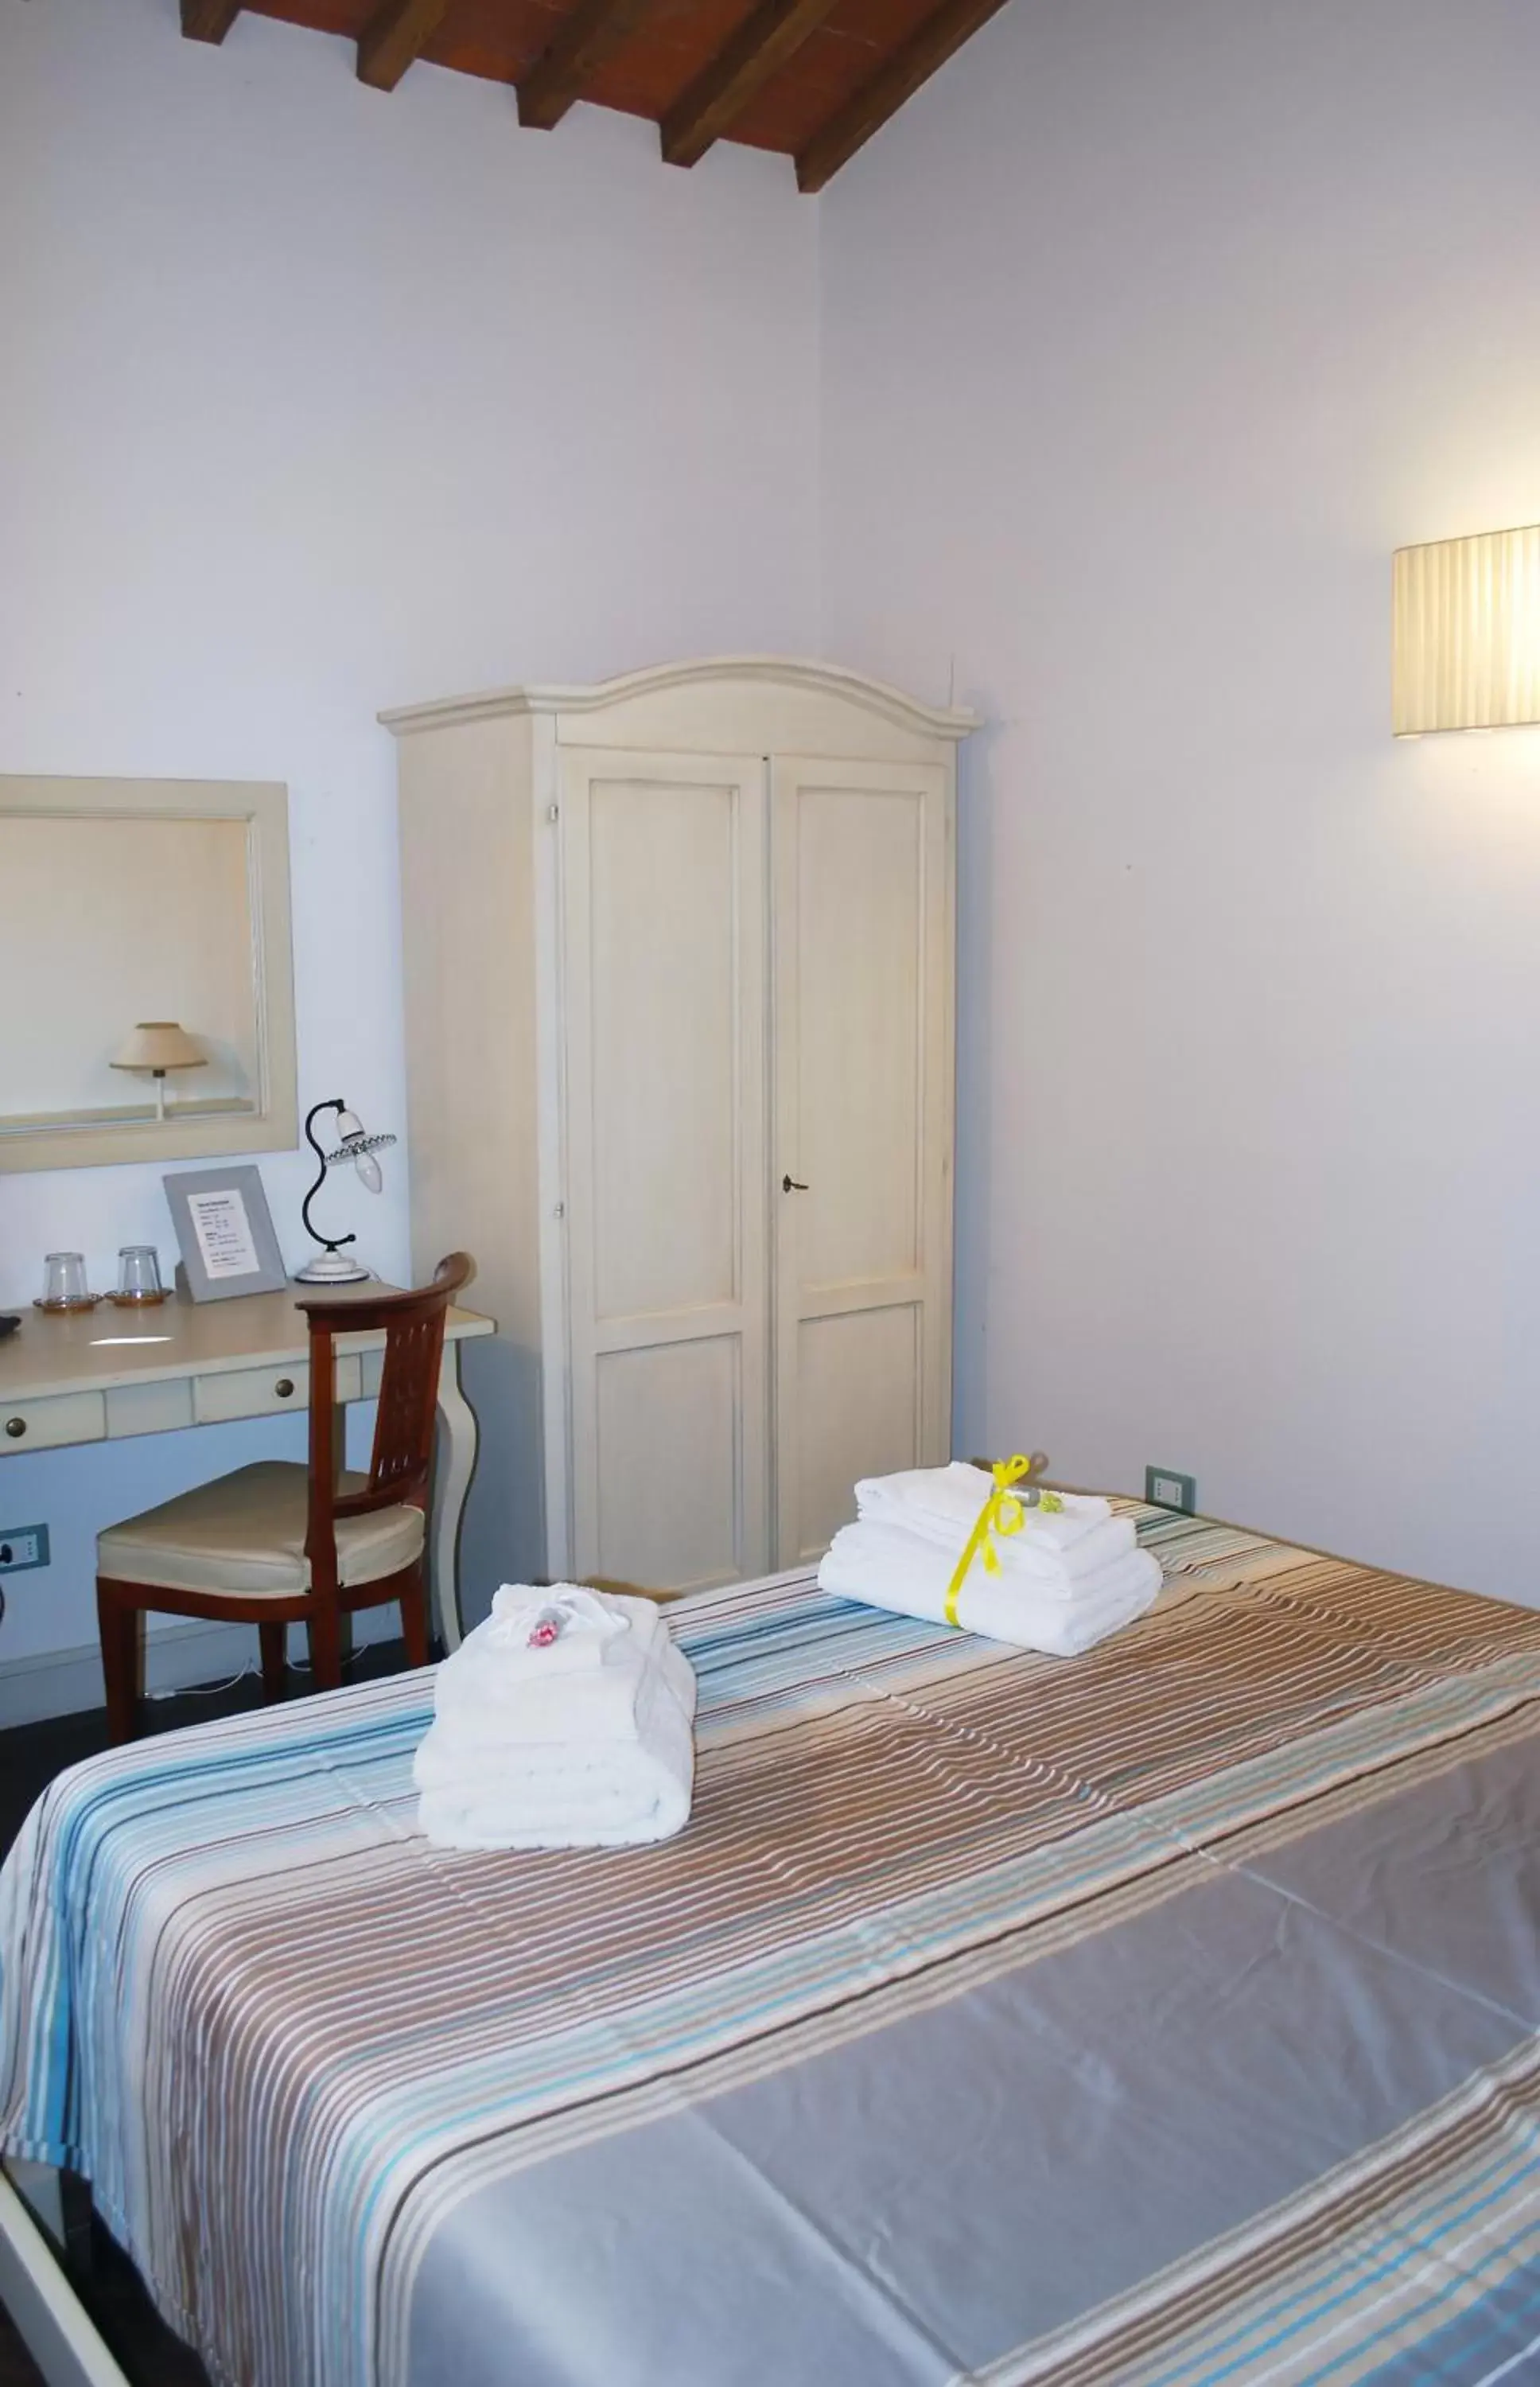 Bedroom, Room Photo in Armonie di Villa Incontri B&B